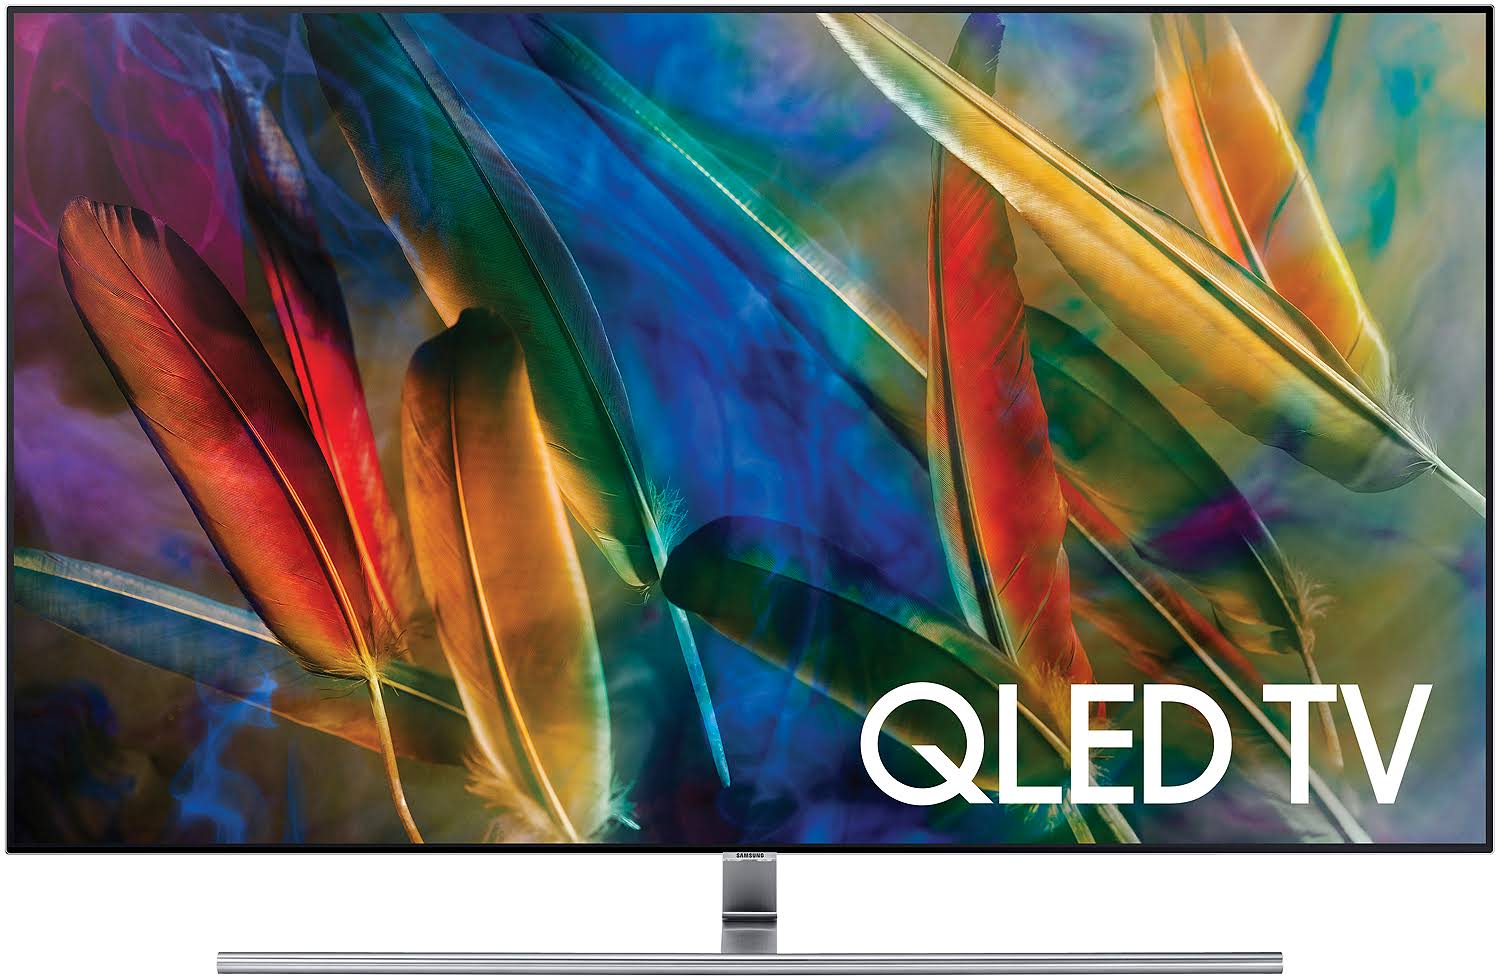 Samsung إلكترونيات QN65Q7F 65-Inch 4K Ultra HD Smart QLED TV (2017 Model)